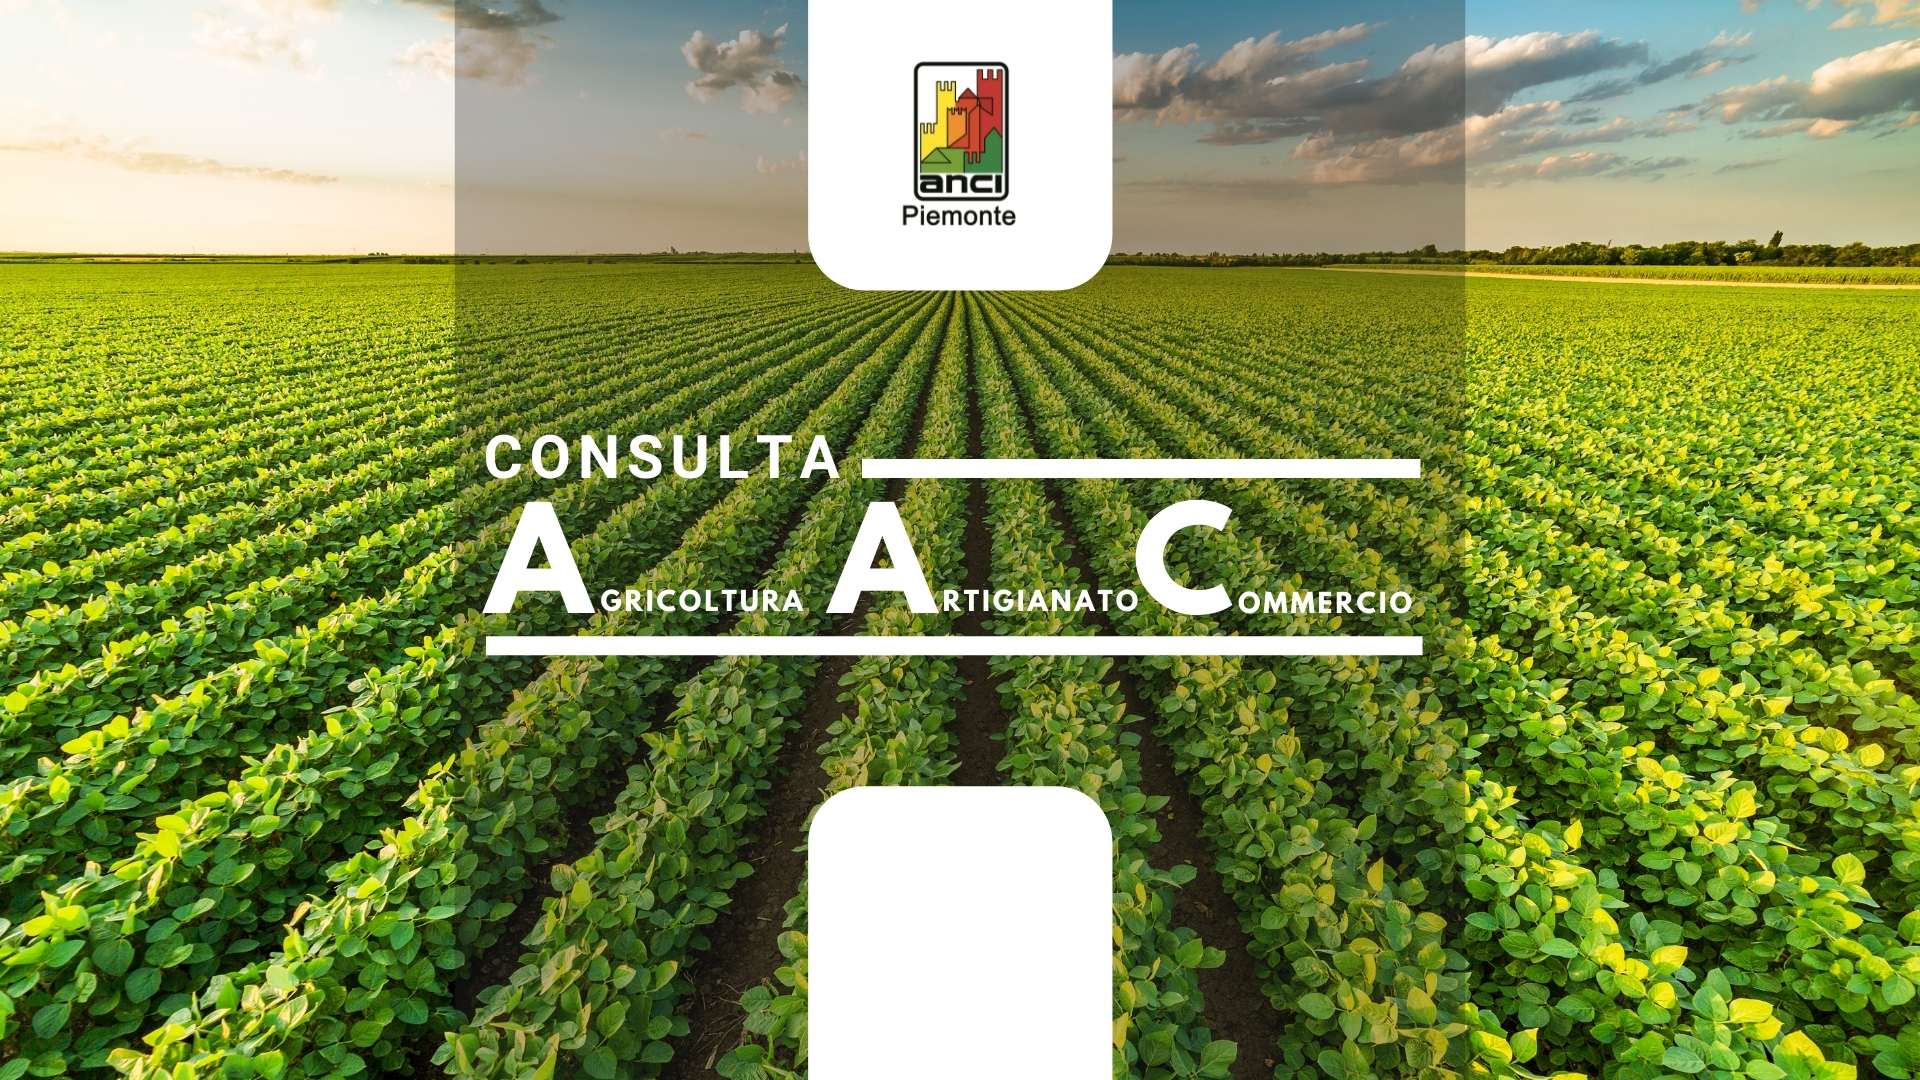 Consulta Agricoltura, Artigianato e Commercio